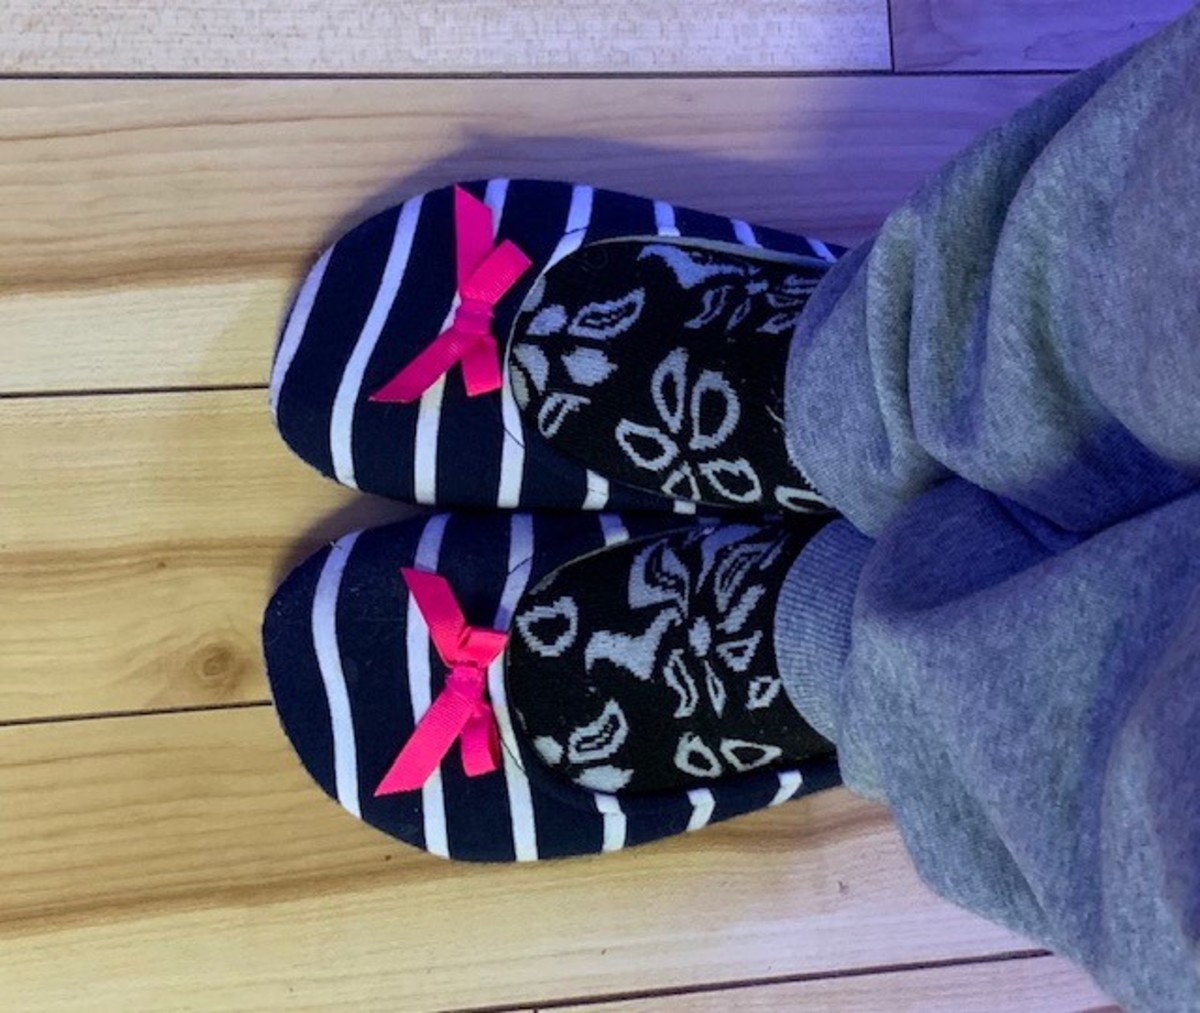 My indoor/outdoor slippers.